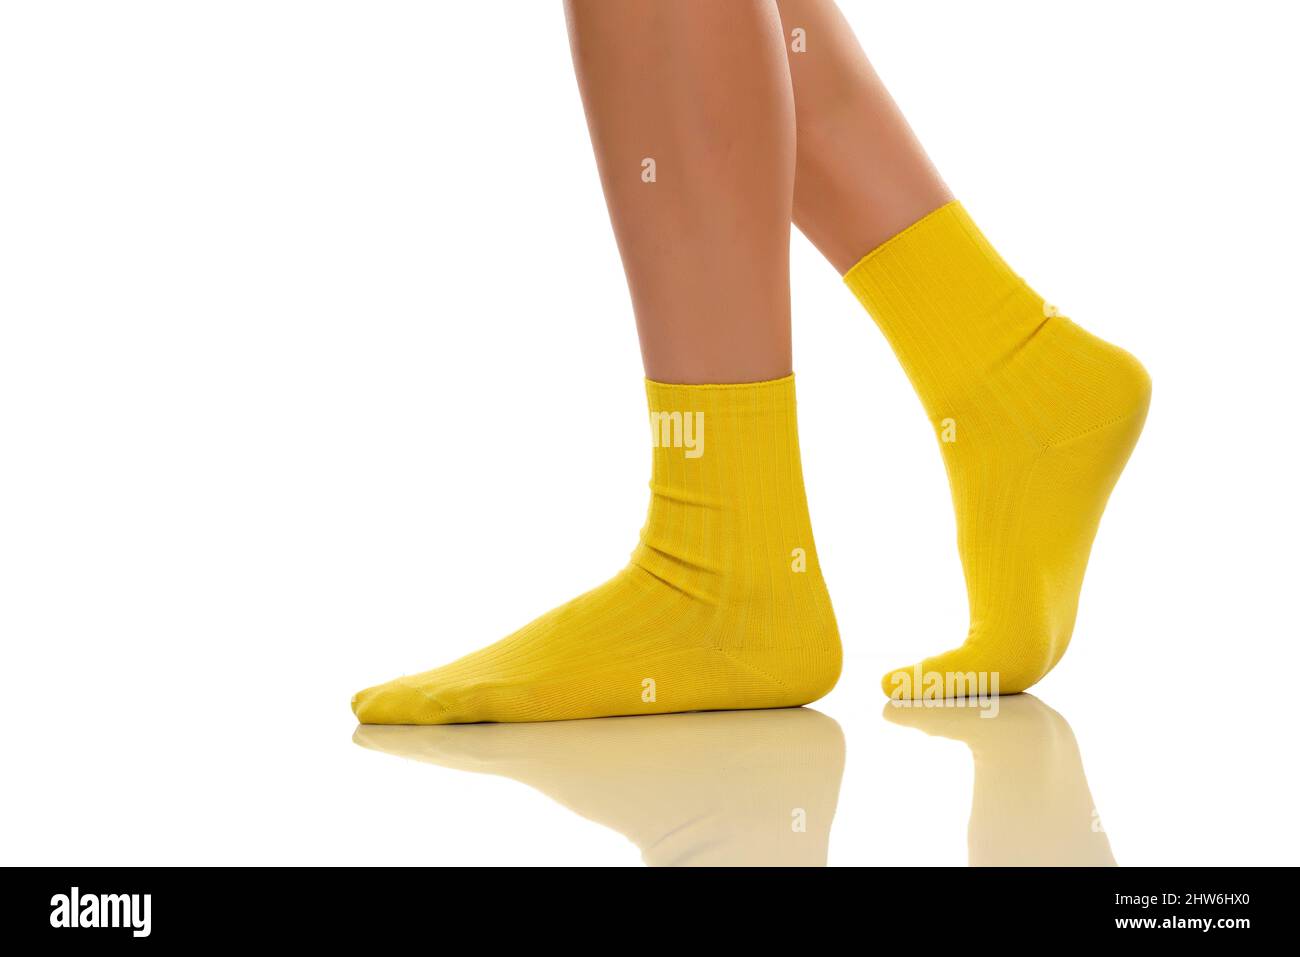 WY5 Weibliche Beine FüßE Fuß Schaufensterpuppe Socke Display Form Kurze Strumpf